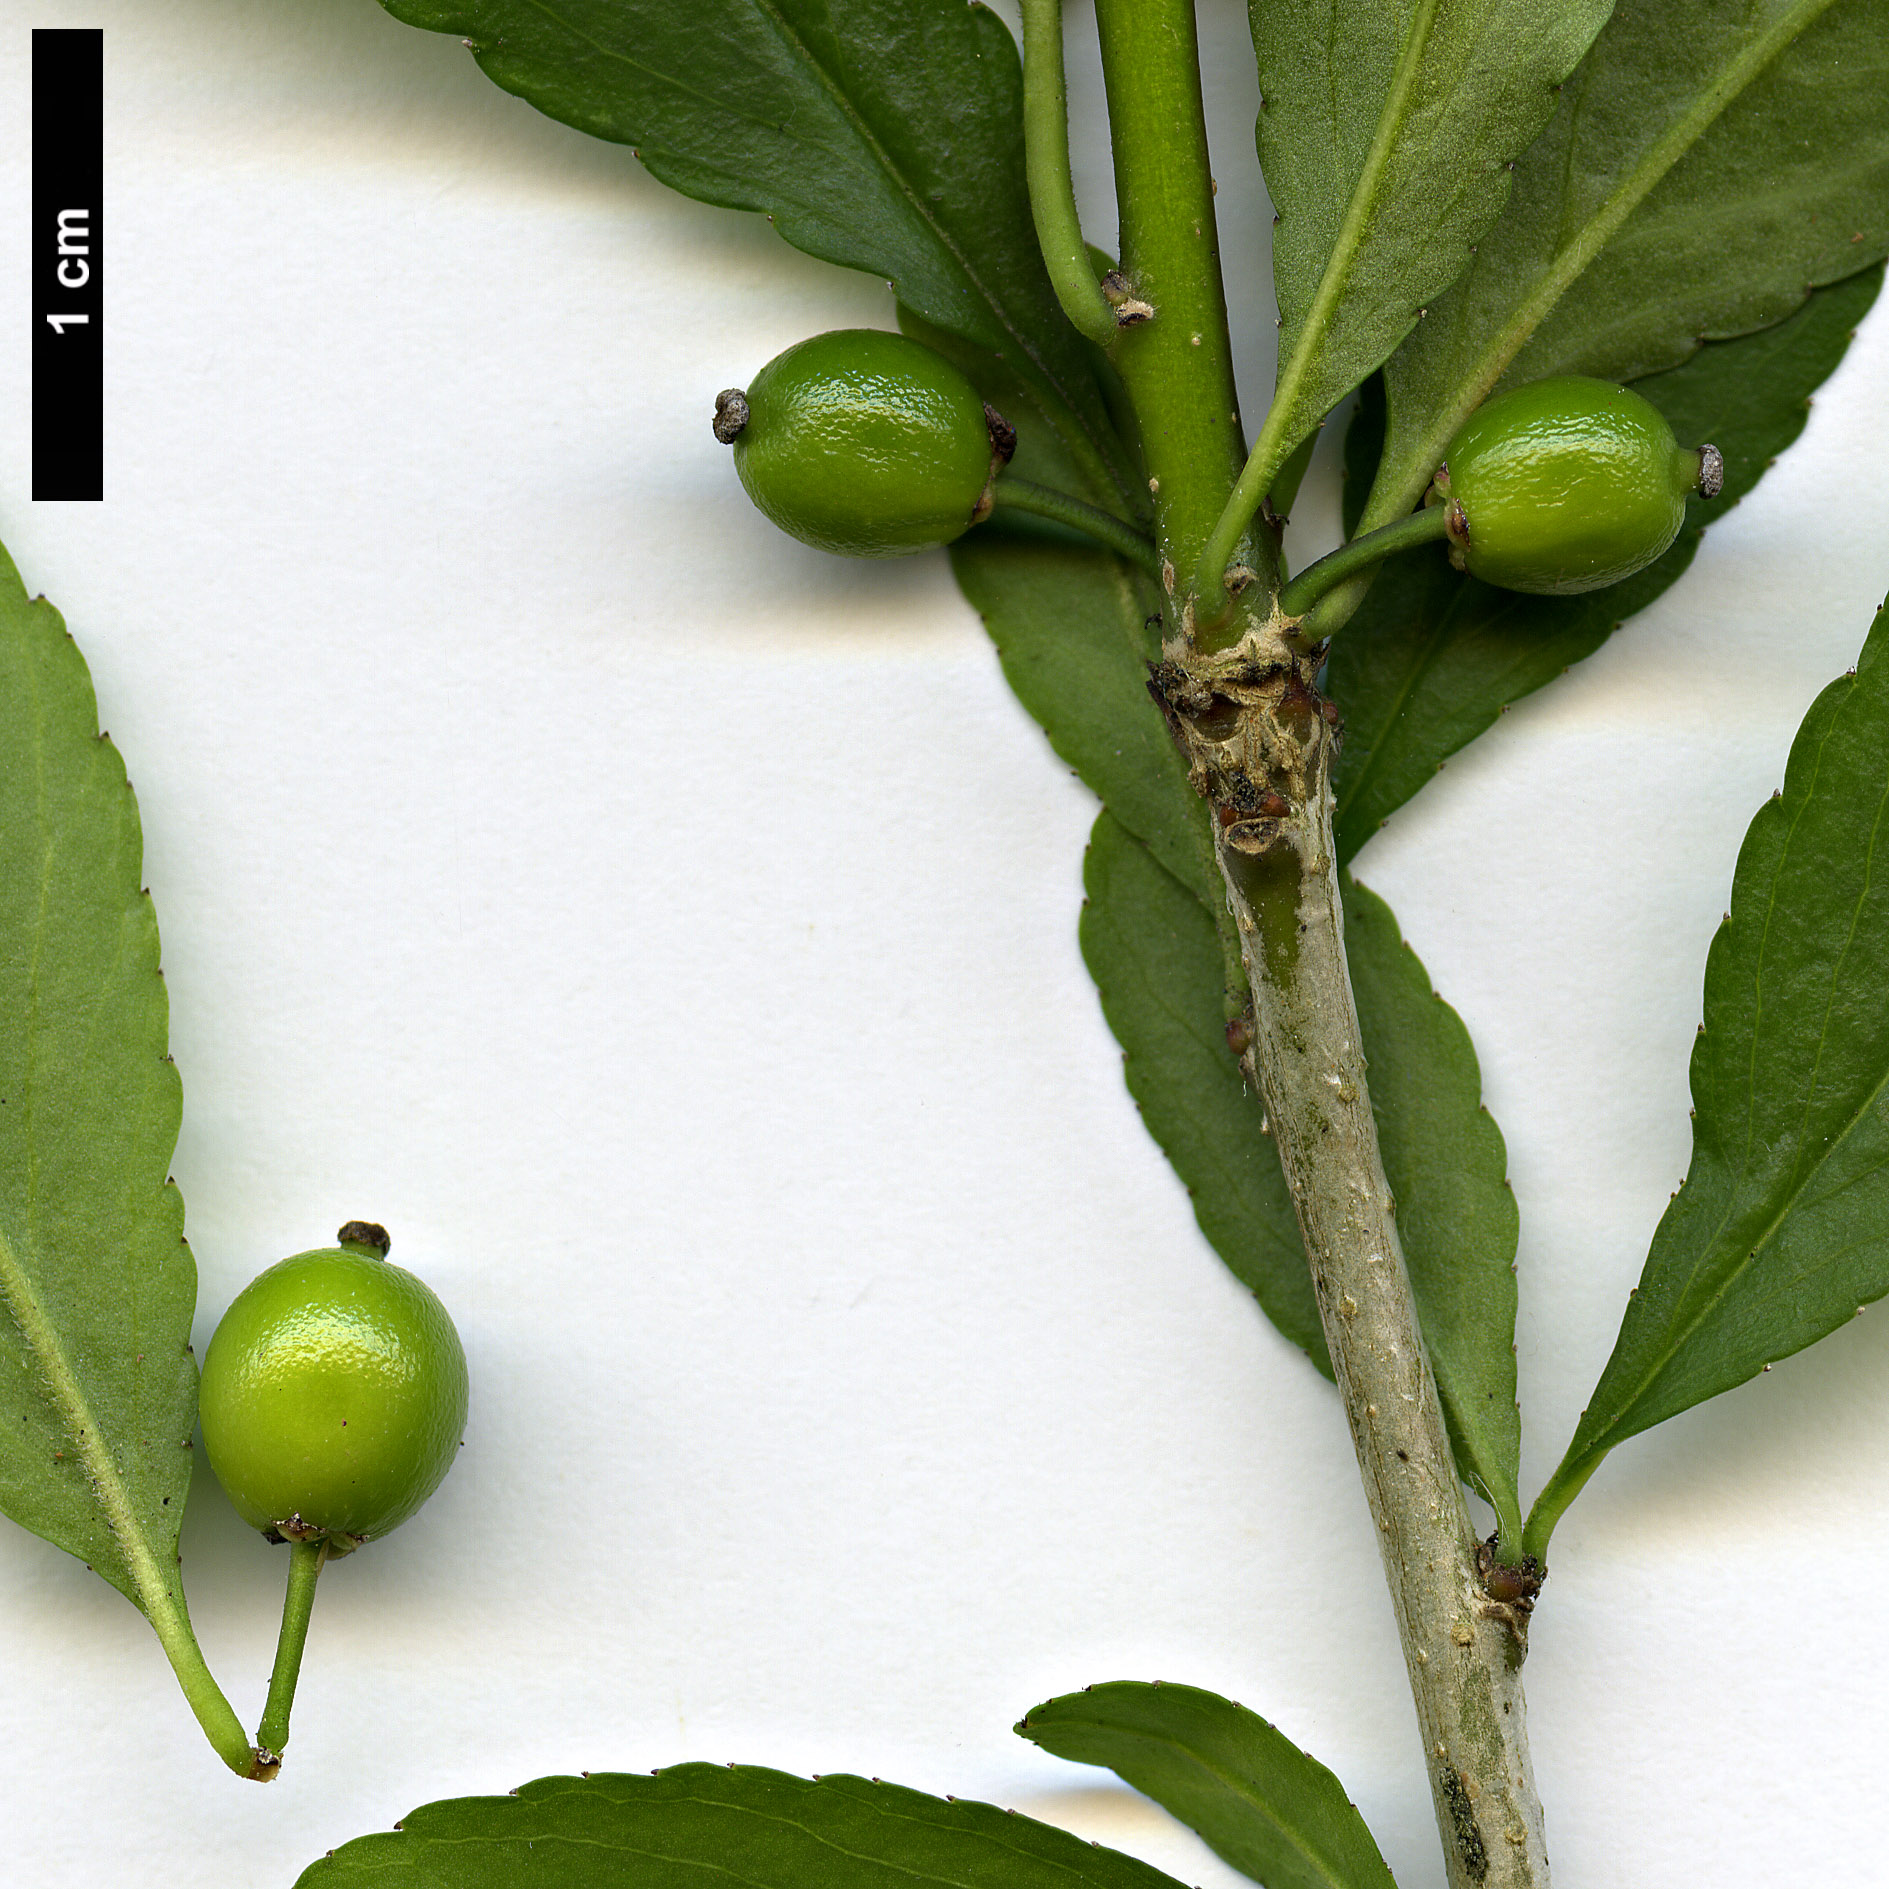 High resolution image: Family: Aquifoliaceae - Genus: Ilex - Taxon: decidua